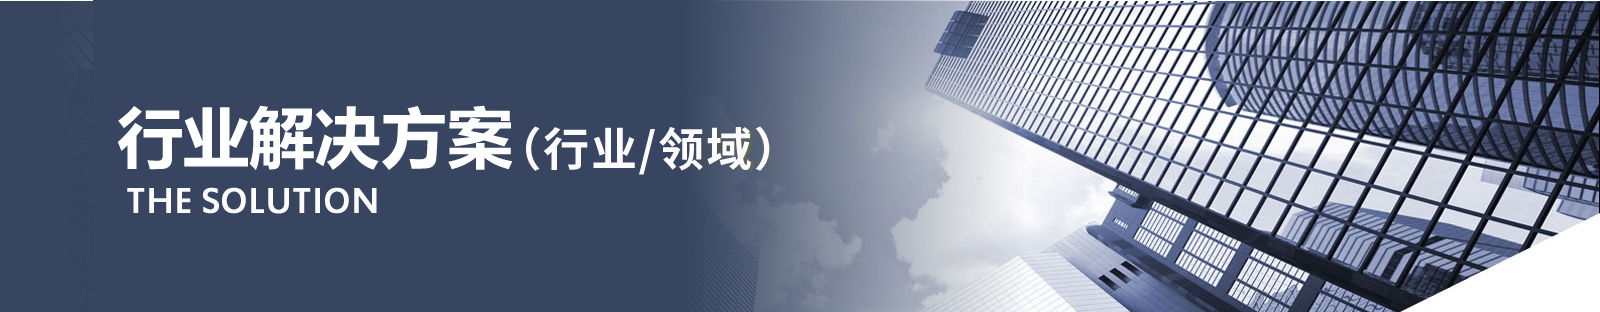 上海金蝶-行业解决方案